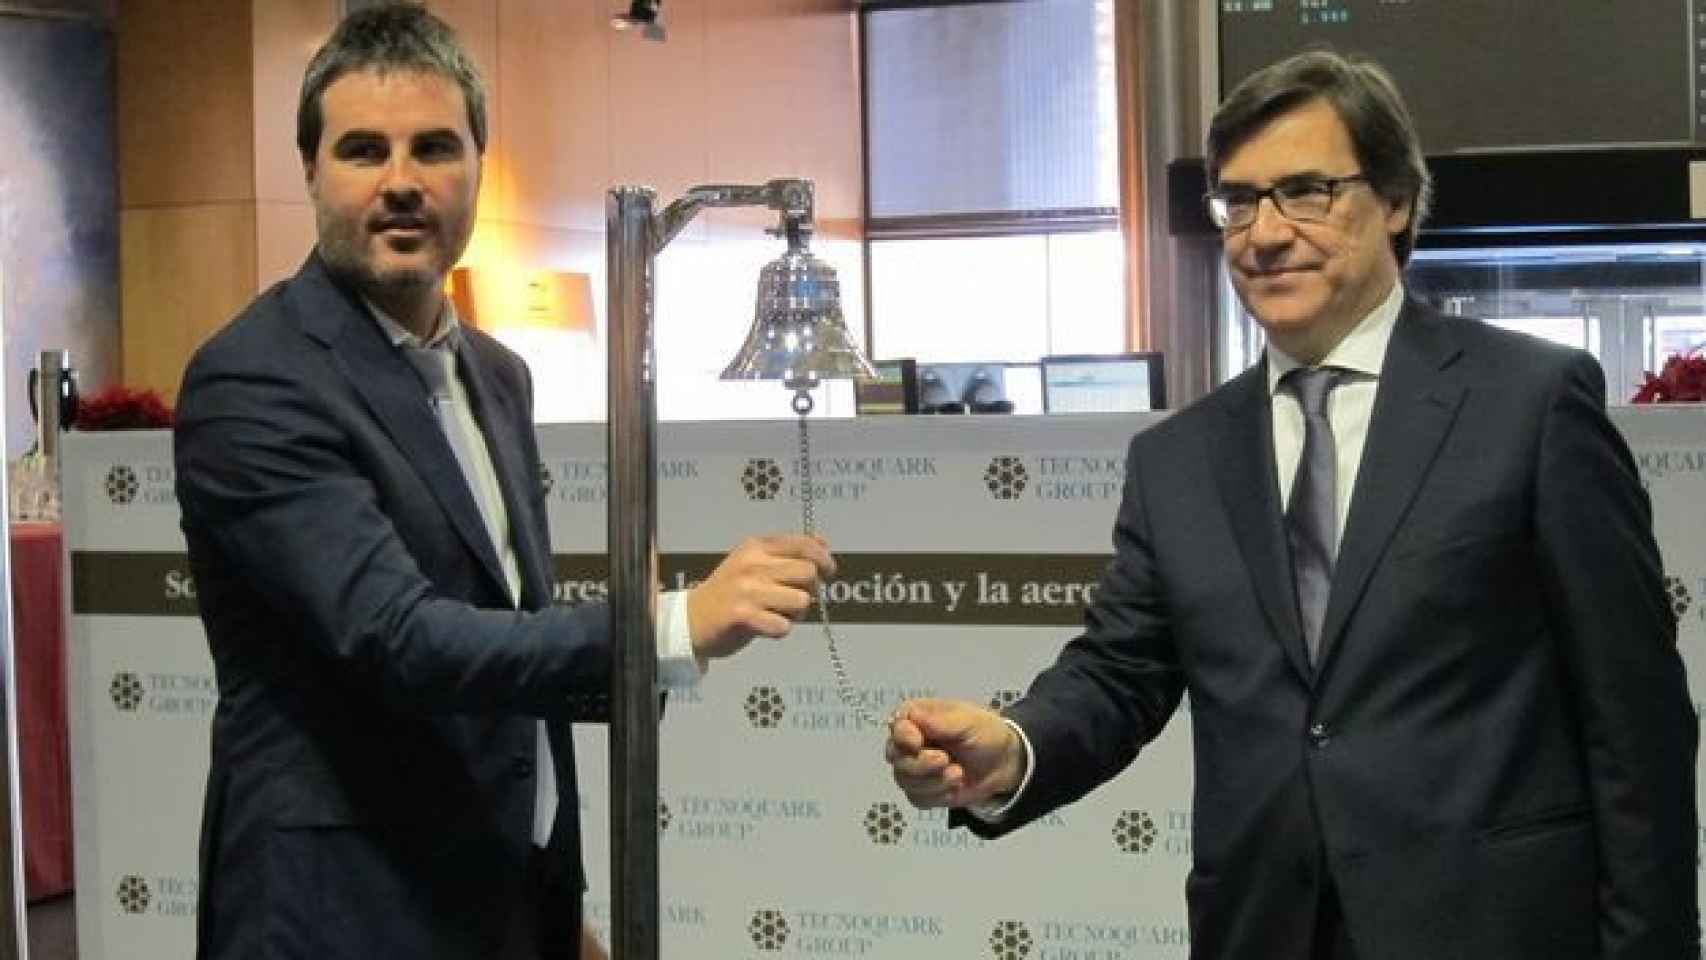 Manuel Mauri y Carles Soler, socios de Tecnoquark / CG